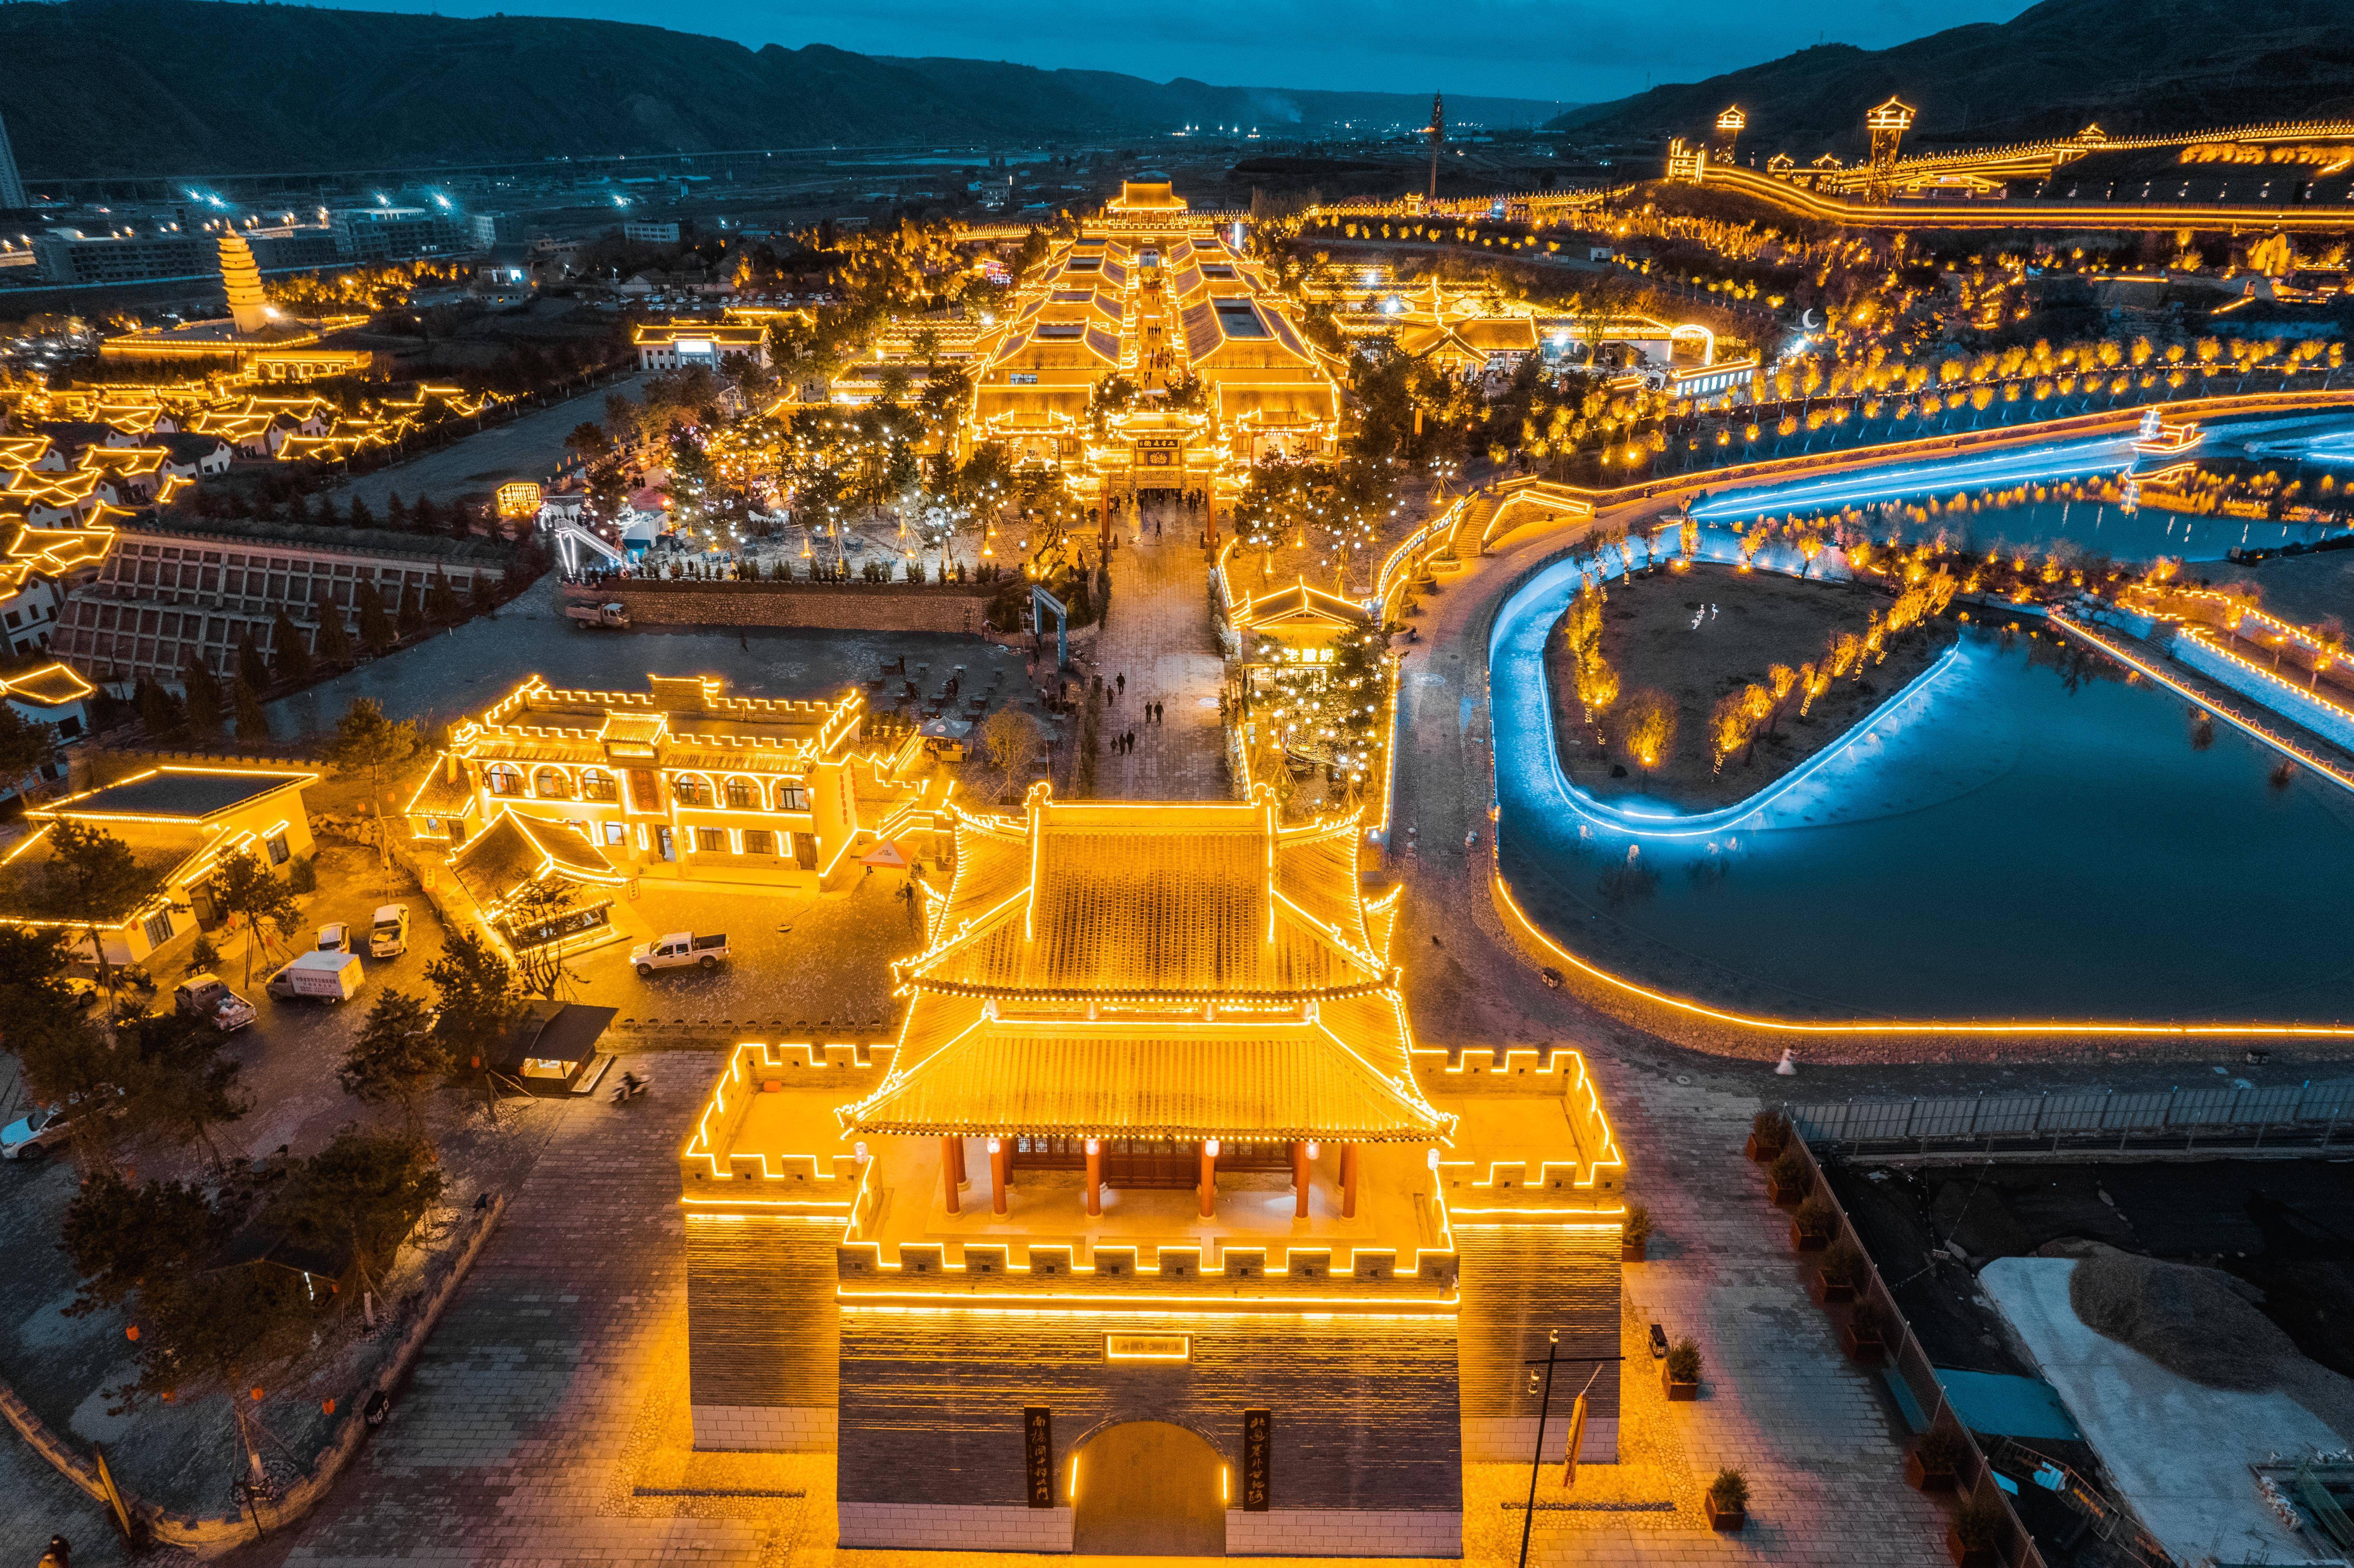 保存最好的大型宫殿建筑;庆阳香包民俗文化节和甘肃岐黄论坛成功举办